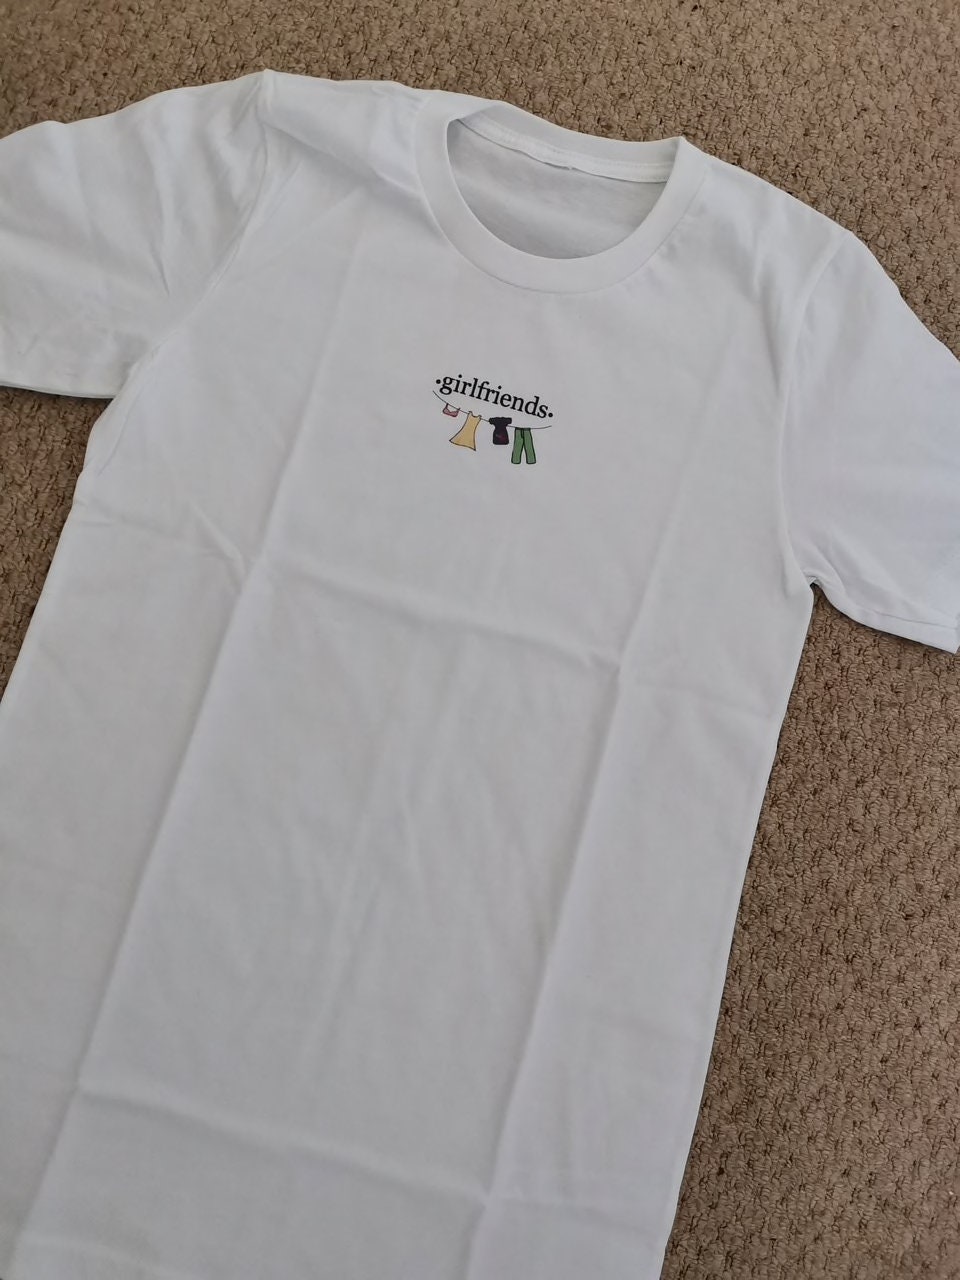 Monica Geller Girlfriends T-shirt Friends 00s 90s Inspired | Etsy